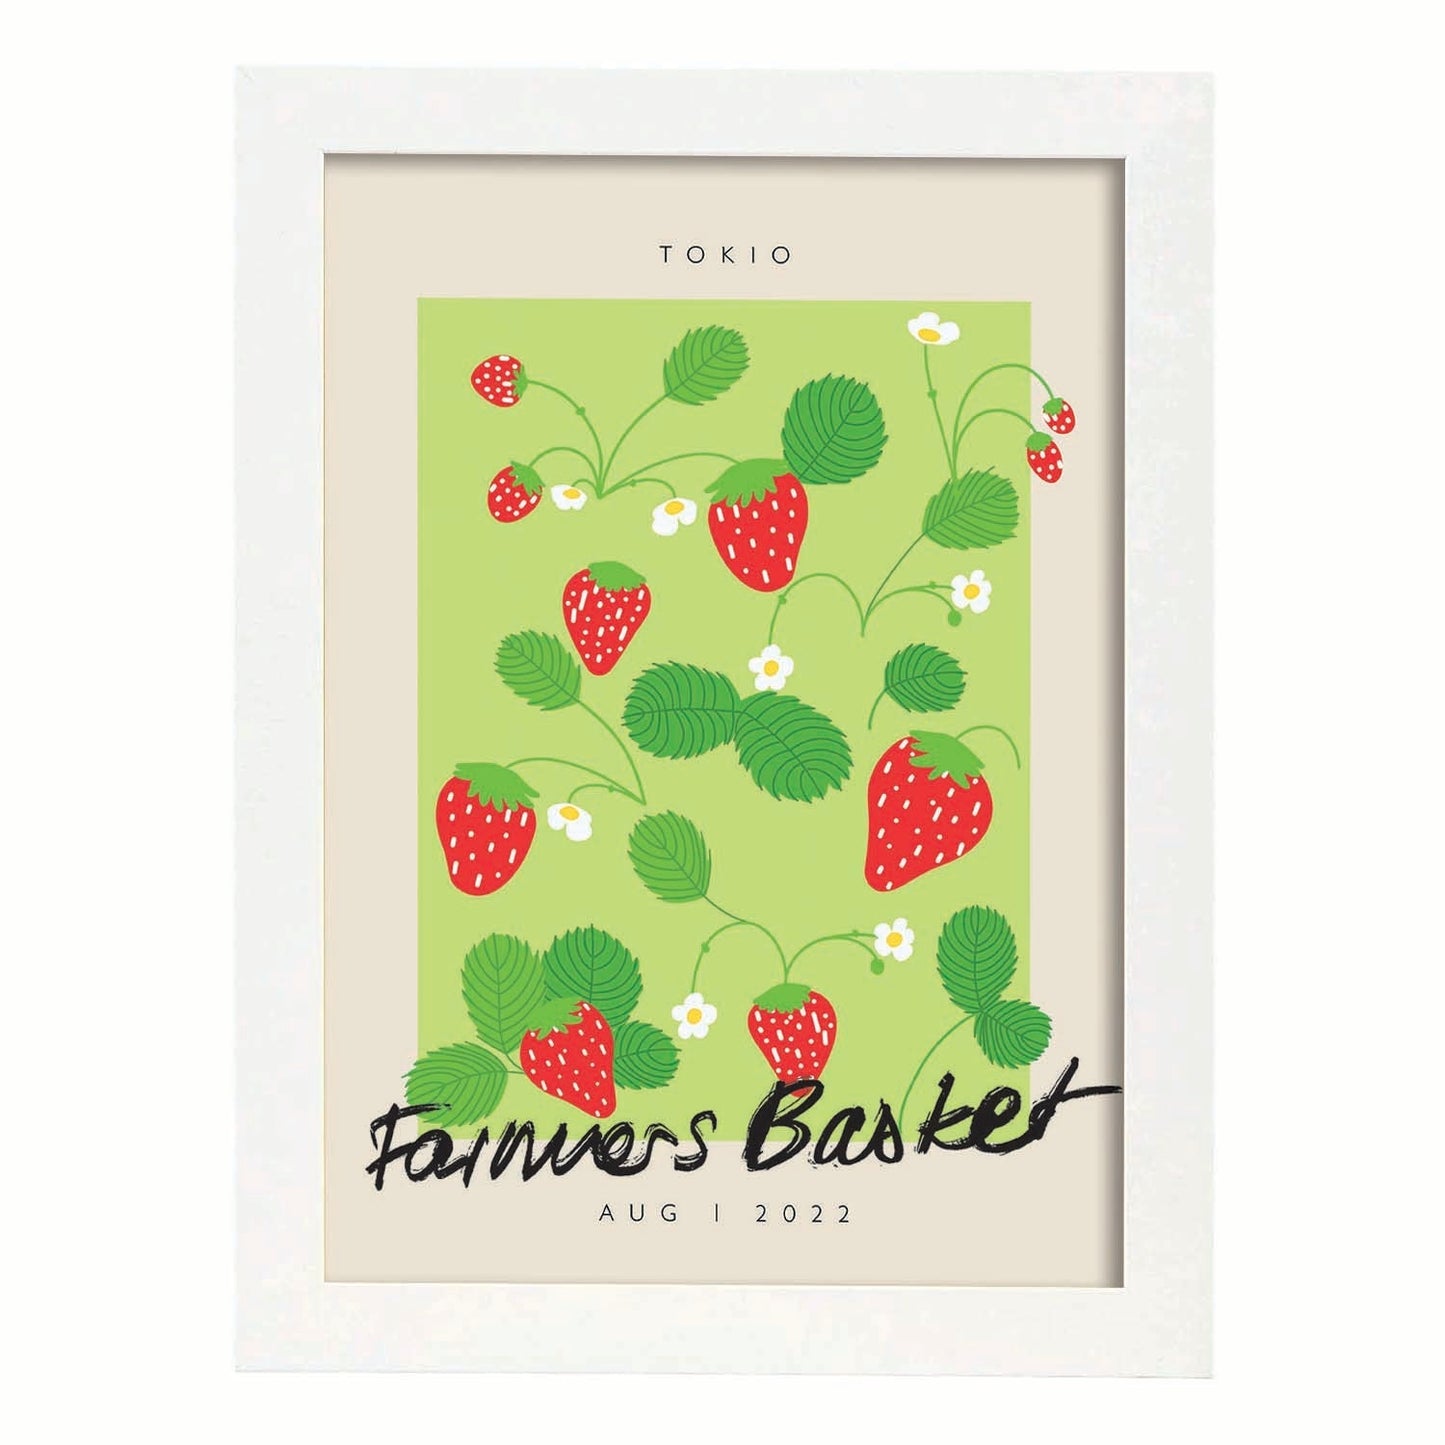 Lamina artistica decorativa con ilustración de Cesta de agricultores Tokio-Artwork-Nacnic-A4-Marco Blanco-Nacnic Estudio SL